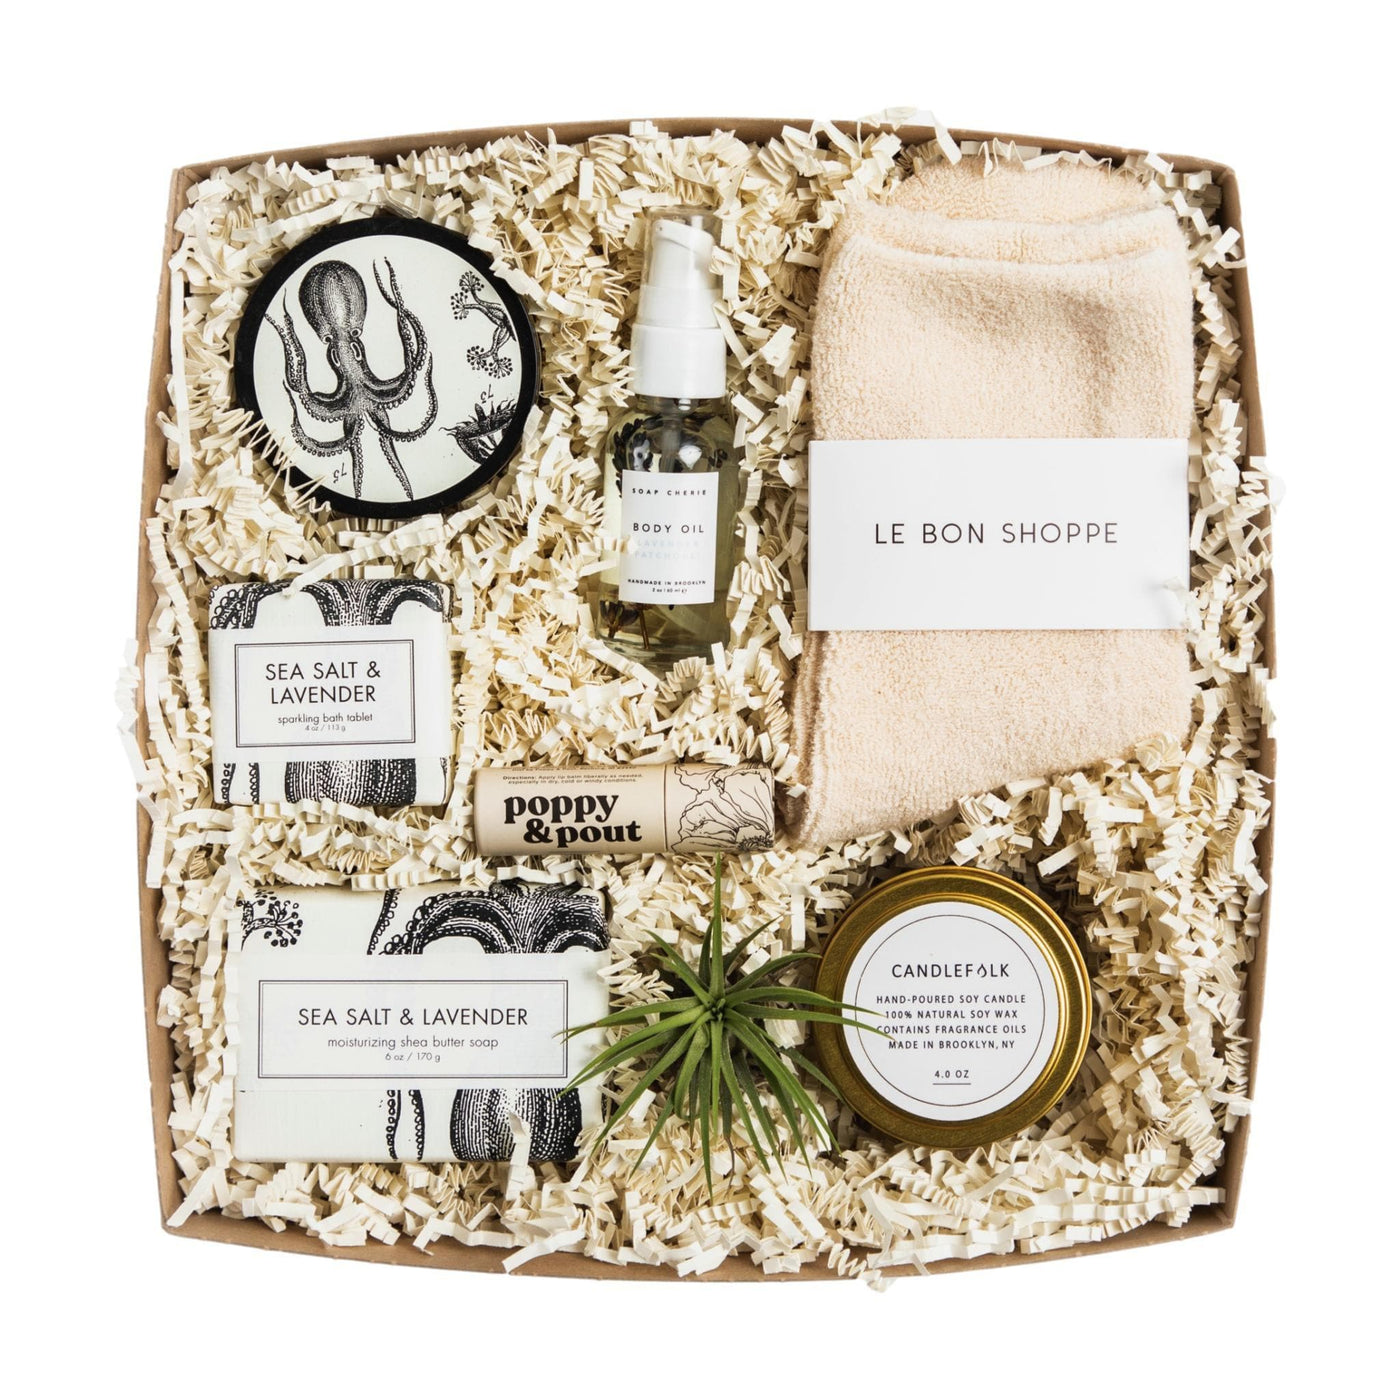 Sea Salt & Lavender Gift Box - Giften Market